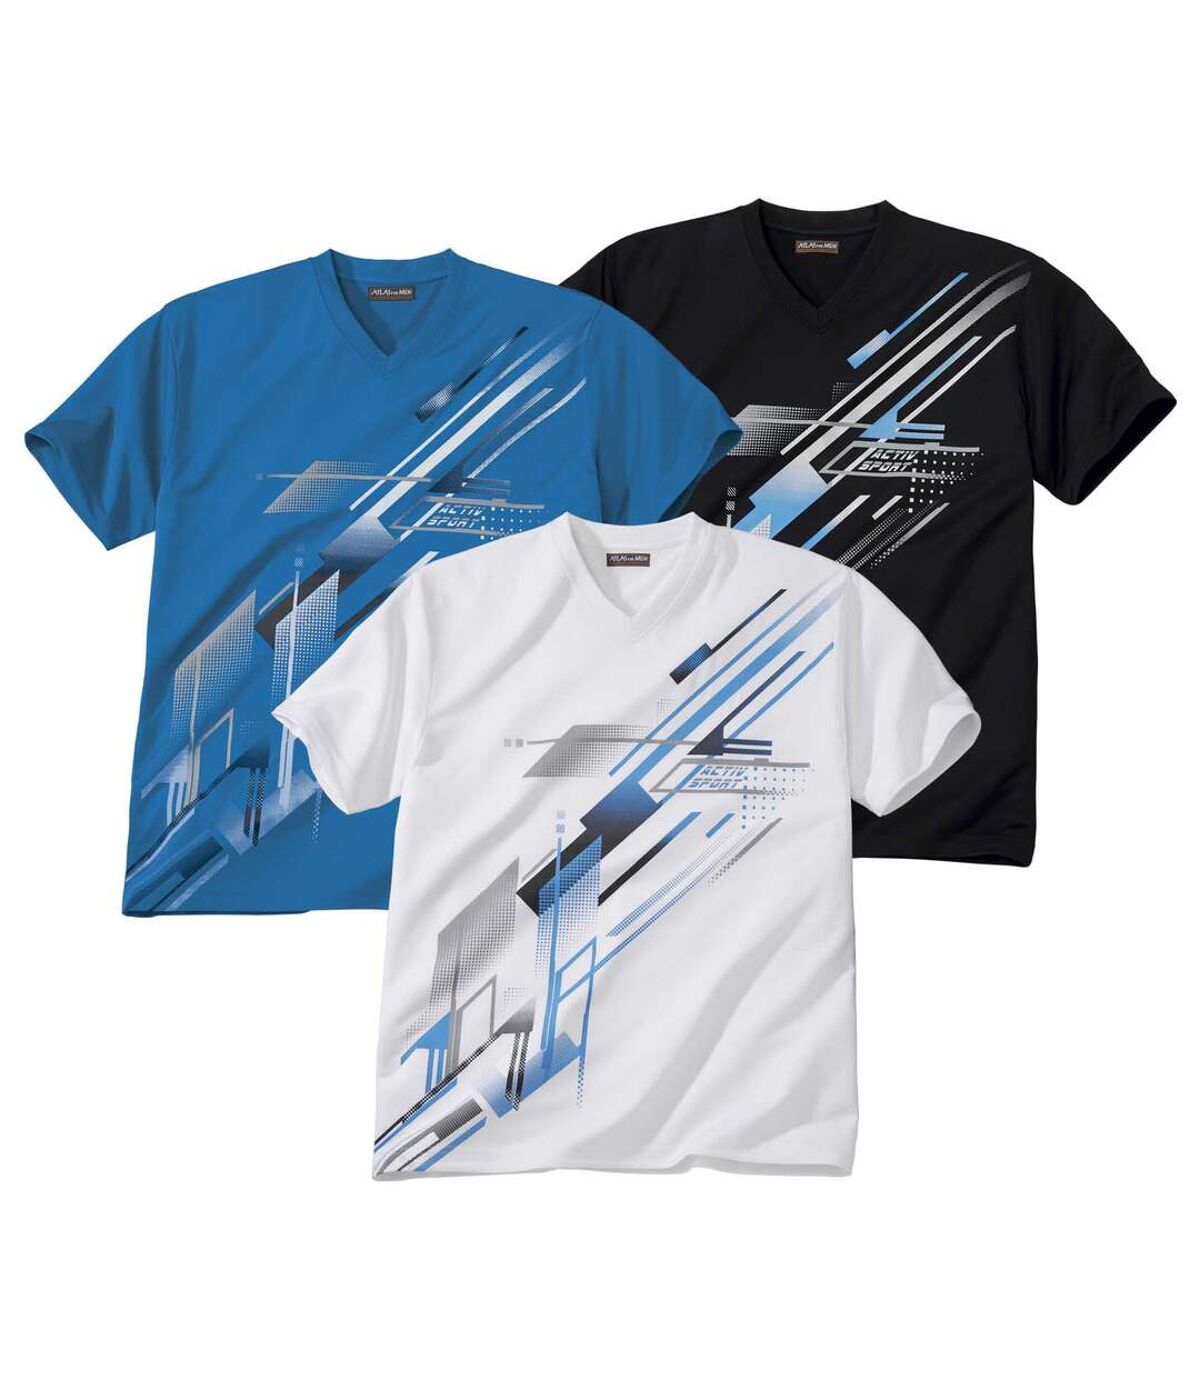 Pack of 3 Men's Sports Print T-Shirts - White Black Blue Atlas For Men